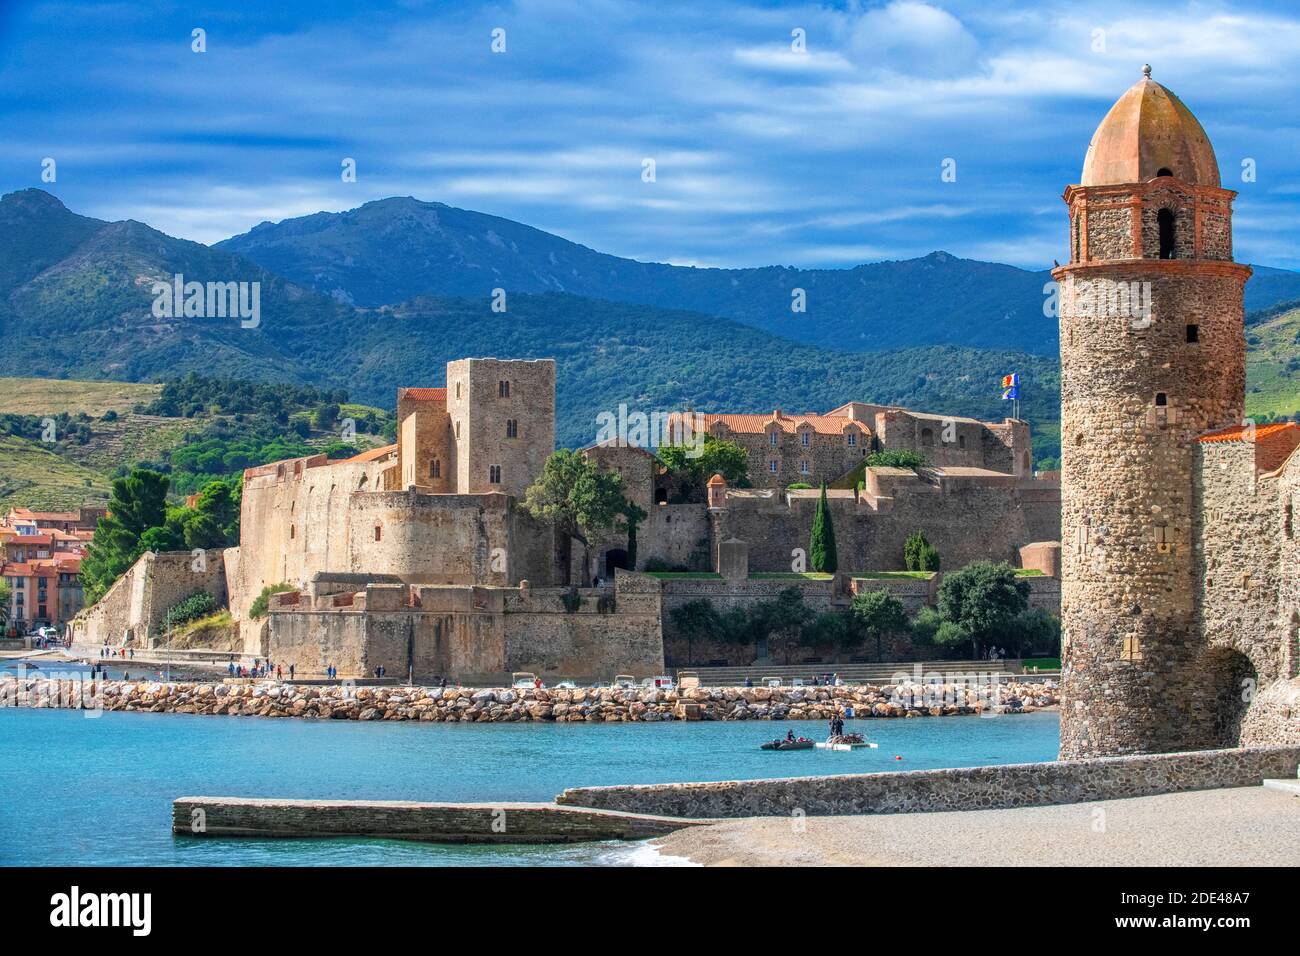 Château royal de Collioure et paysage plage de bord de mer du village pittoresque de Colliure, près de Perpignan au sud de la France Languedoc-Roussillon C. Banque D'Images